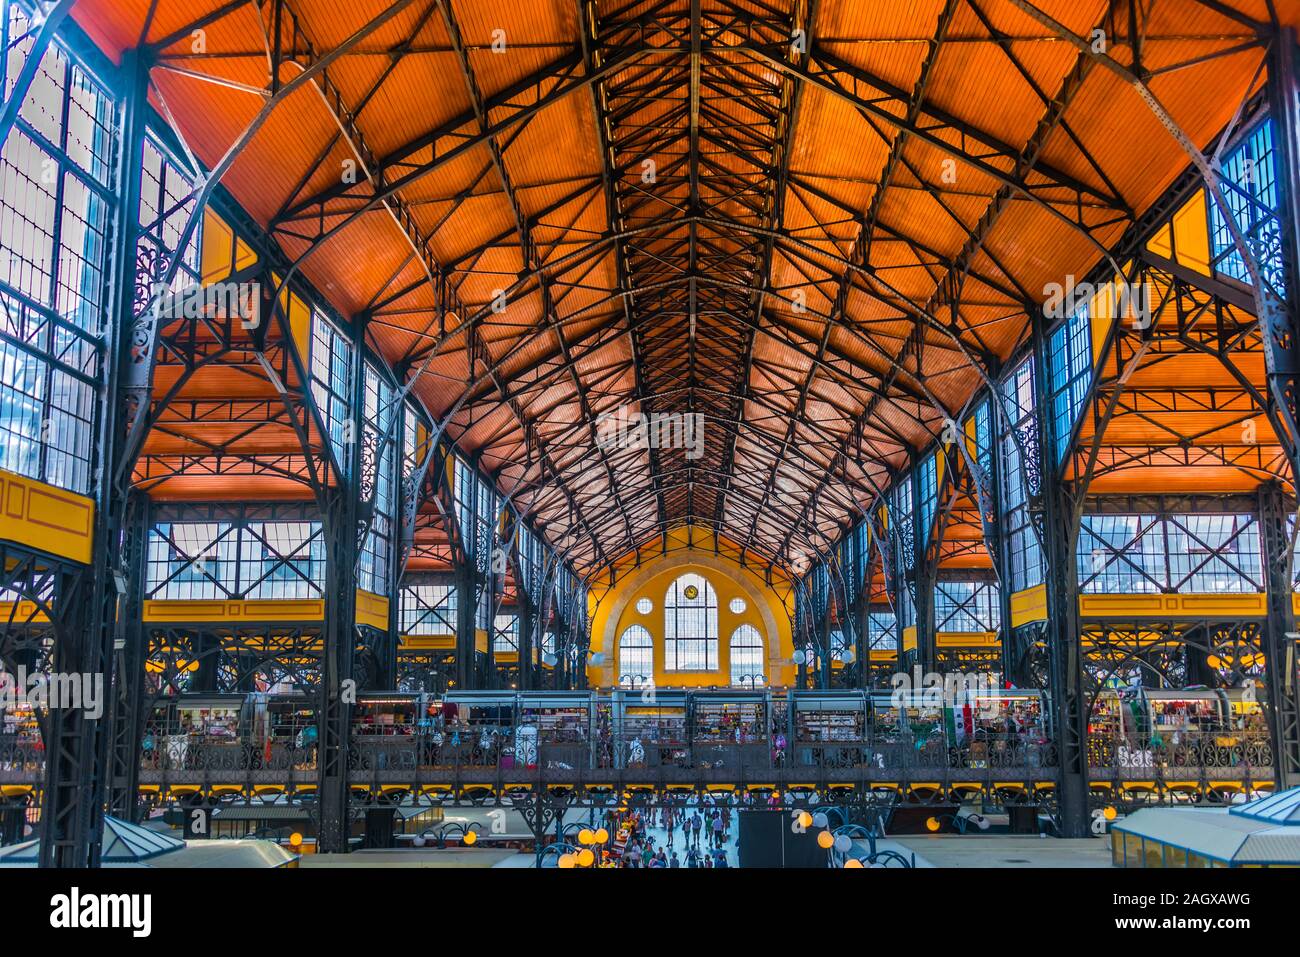 BUDAPEST, Ungarn - May 30, 2019: Große Markthalle oder die zentrale Markthalle in Budapest, Ungarn Stockfoto